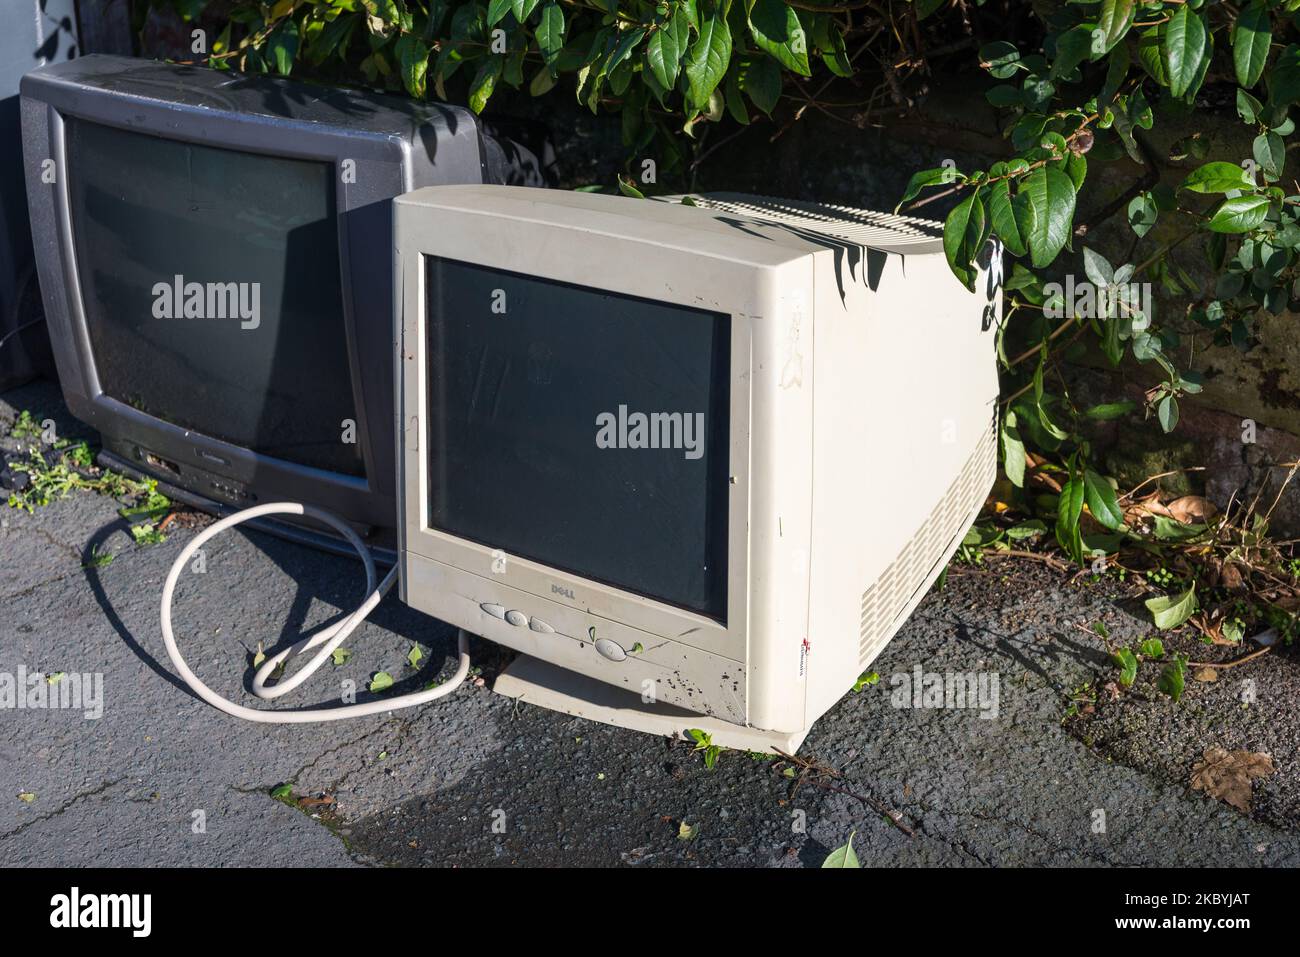 Alte röhrenfernseher und Computermonitor wurden zur Abholung oder Entsorgung auf dem Bürgersteig gelassen Stockfoto